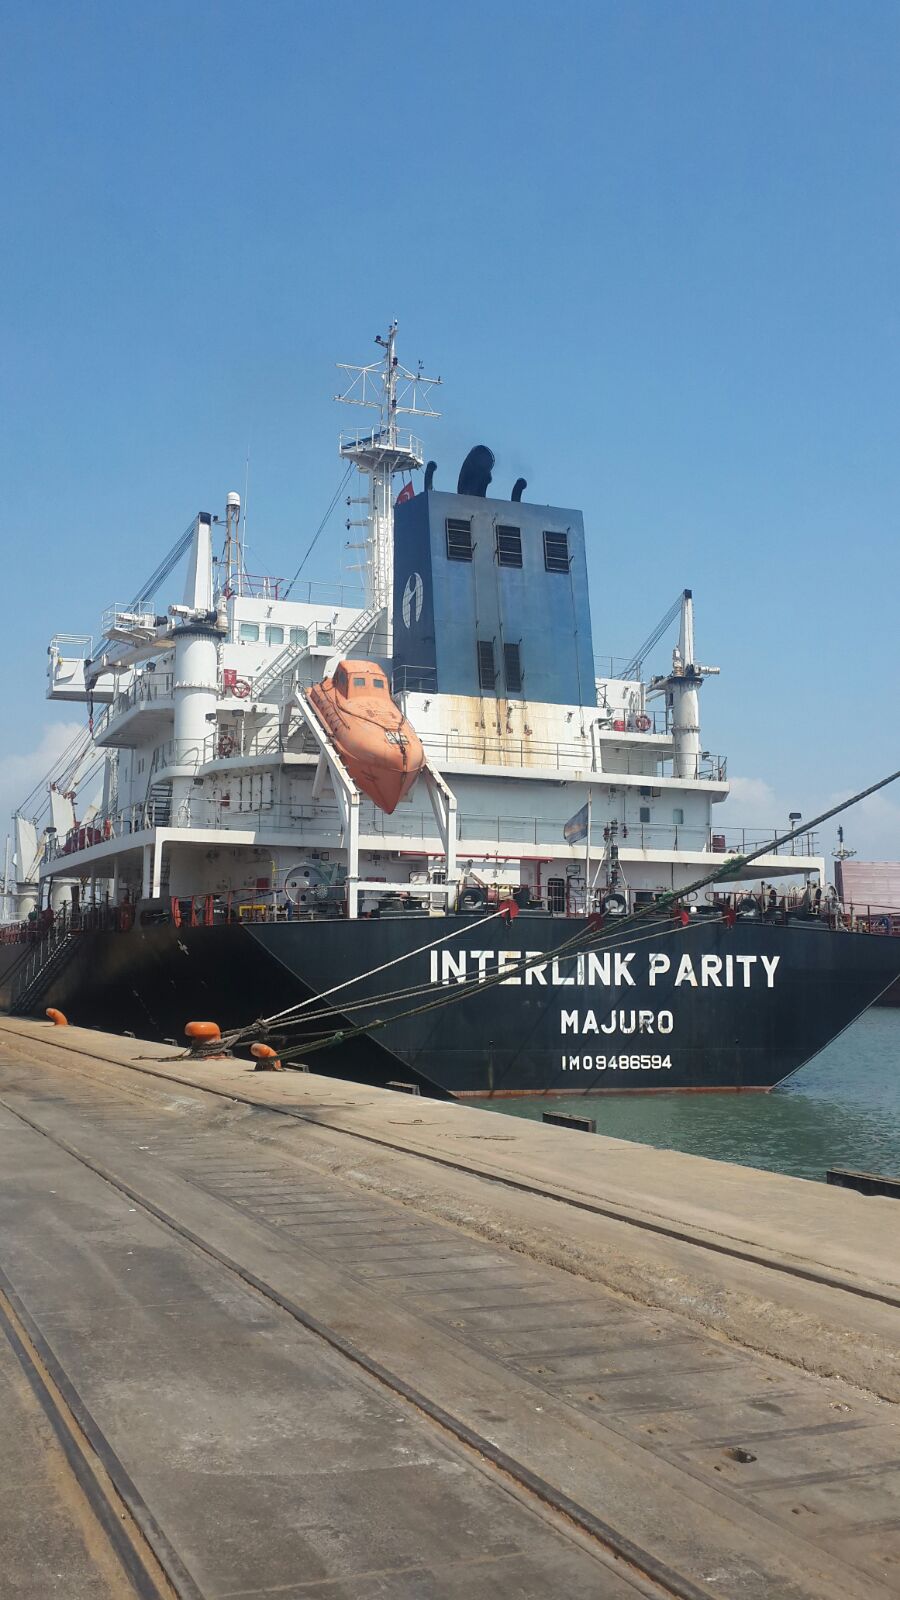 MV INTERLINK PARITY – DISCHARGING